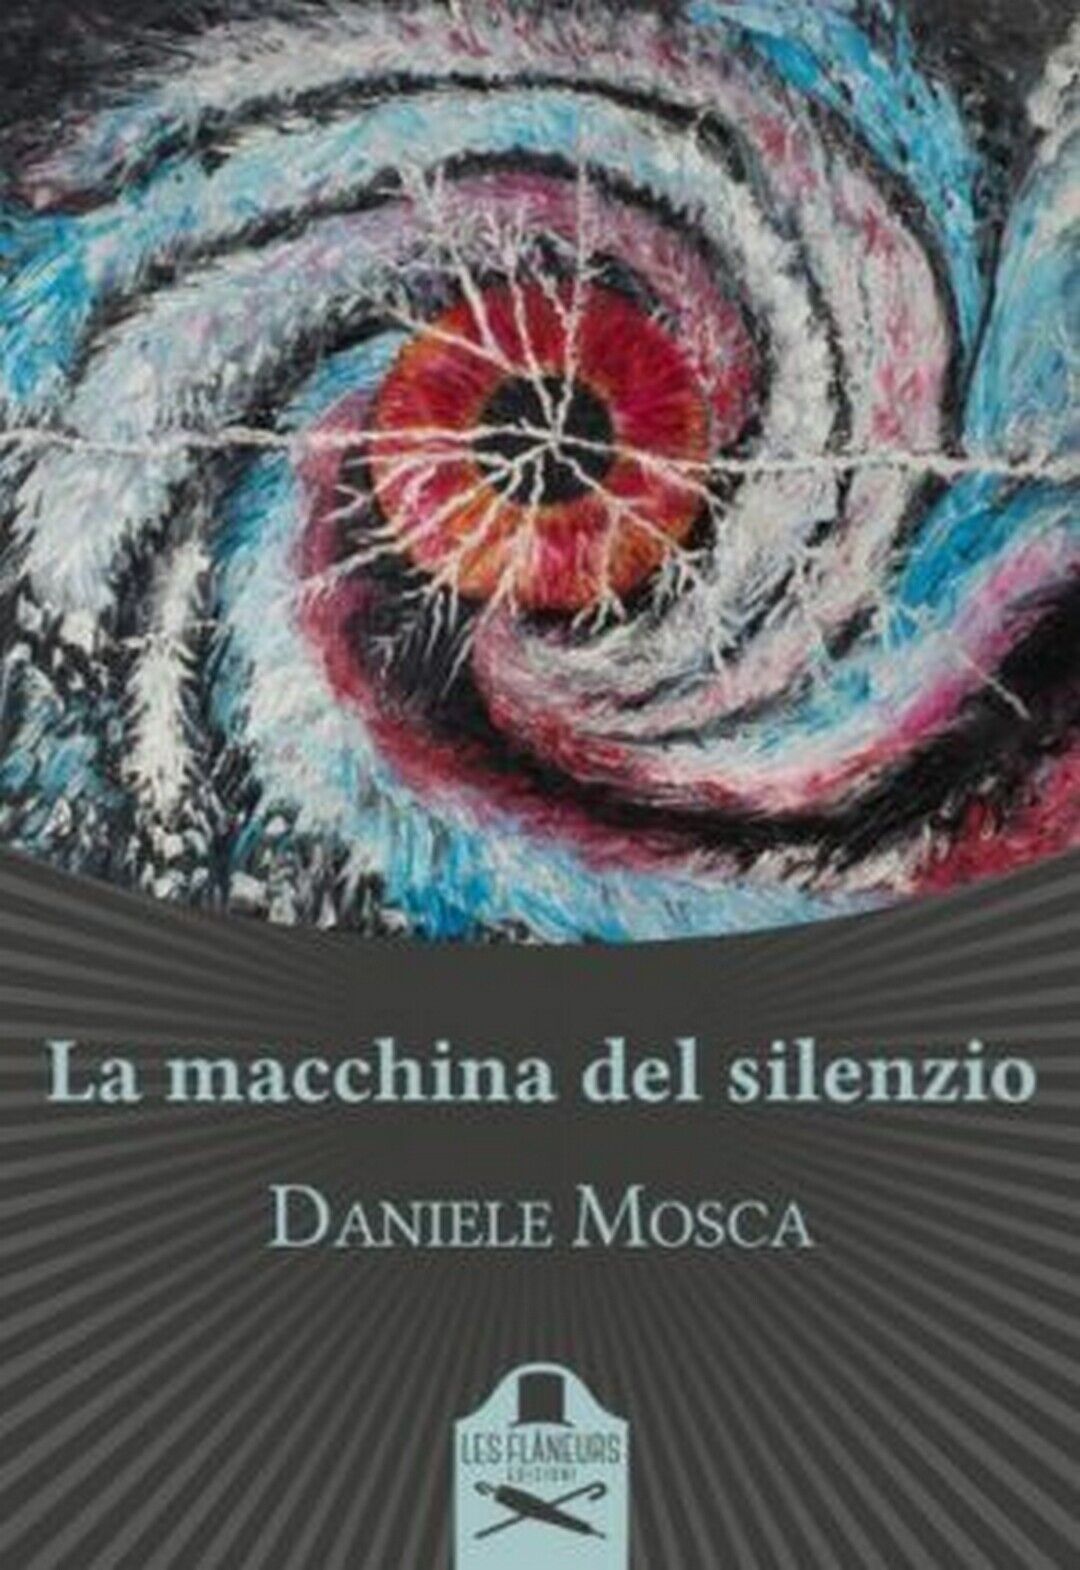 La macchina del silenzio  di Daniele Mosca ,  Flaneurs libro usato